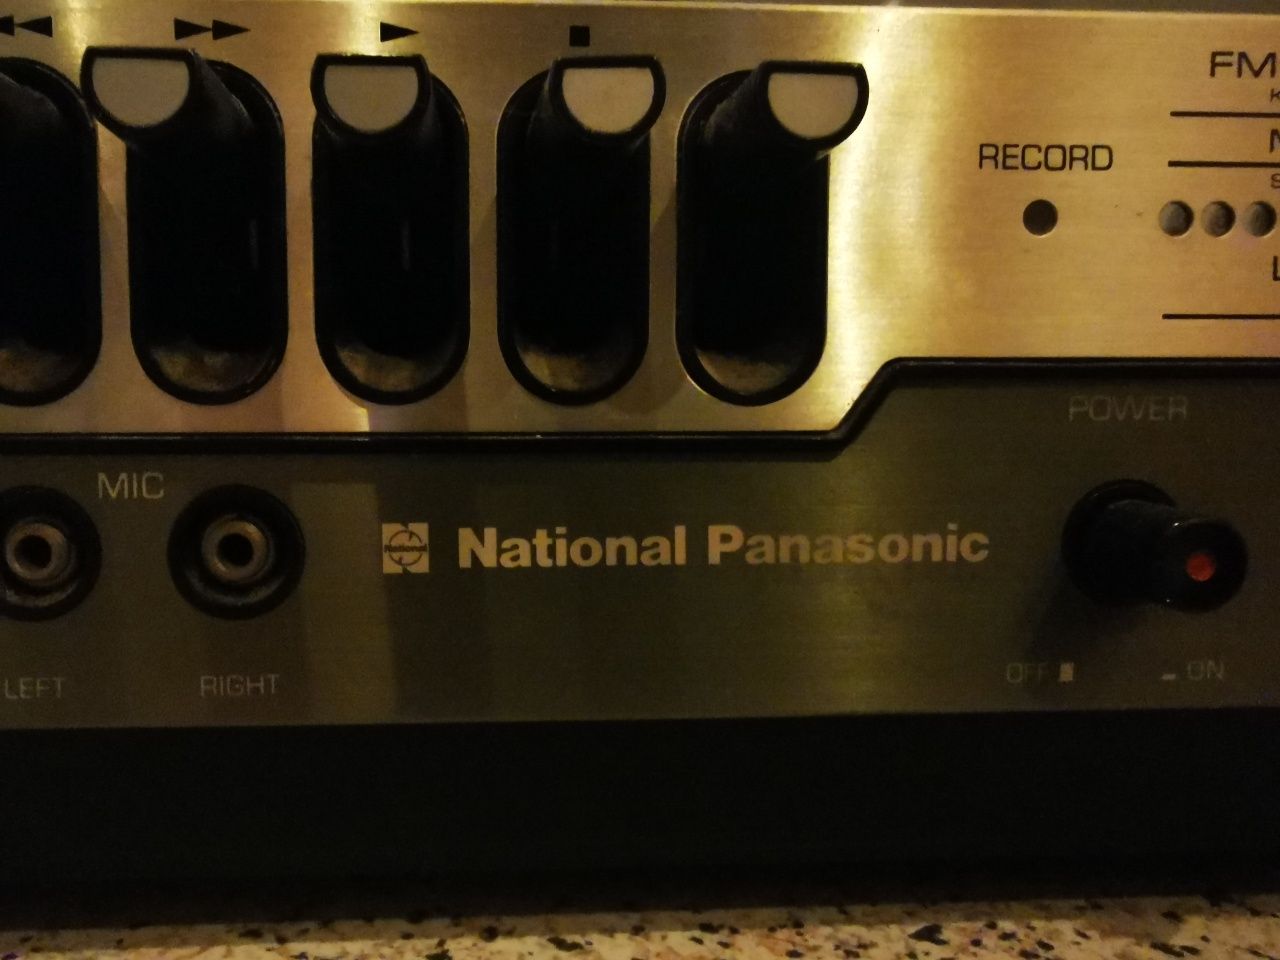 Giradiscos National Panasonic